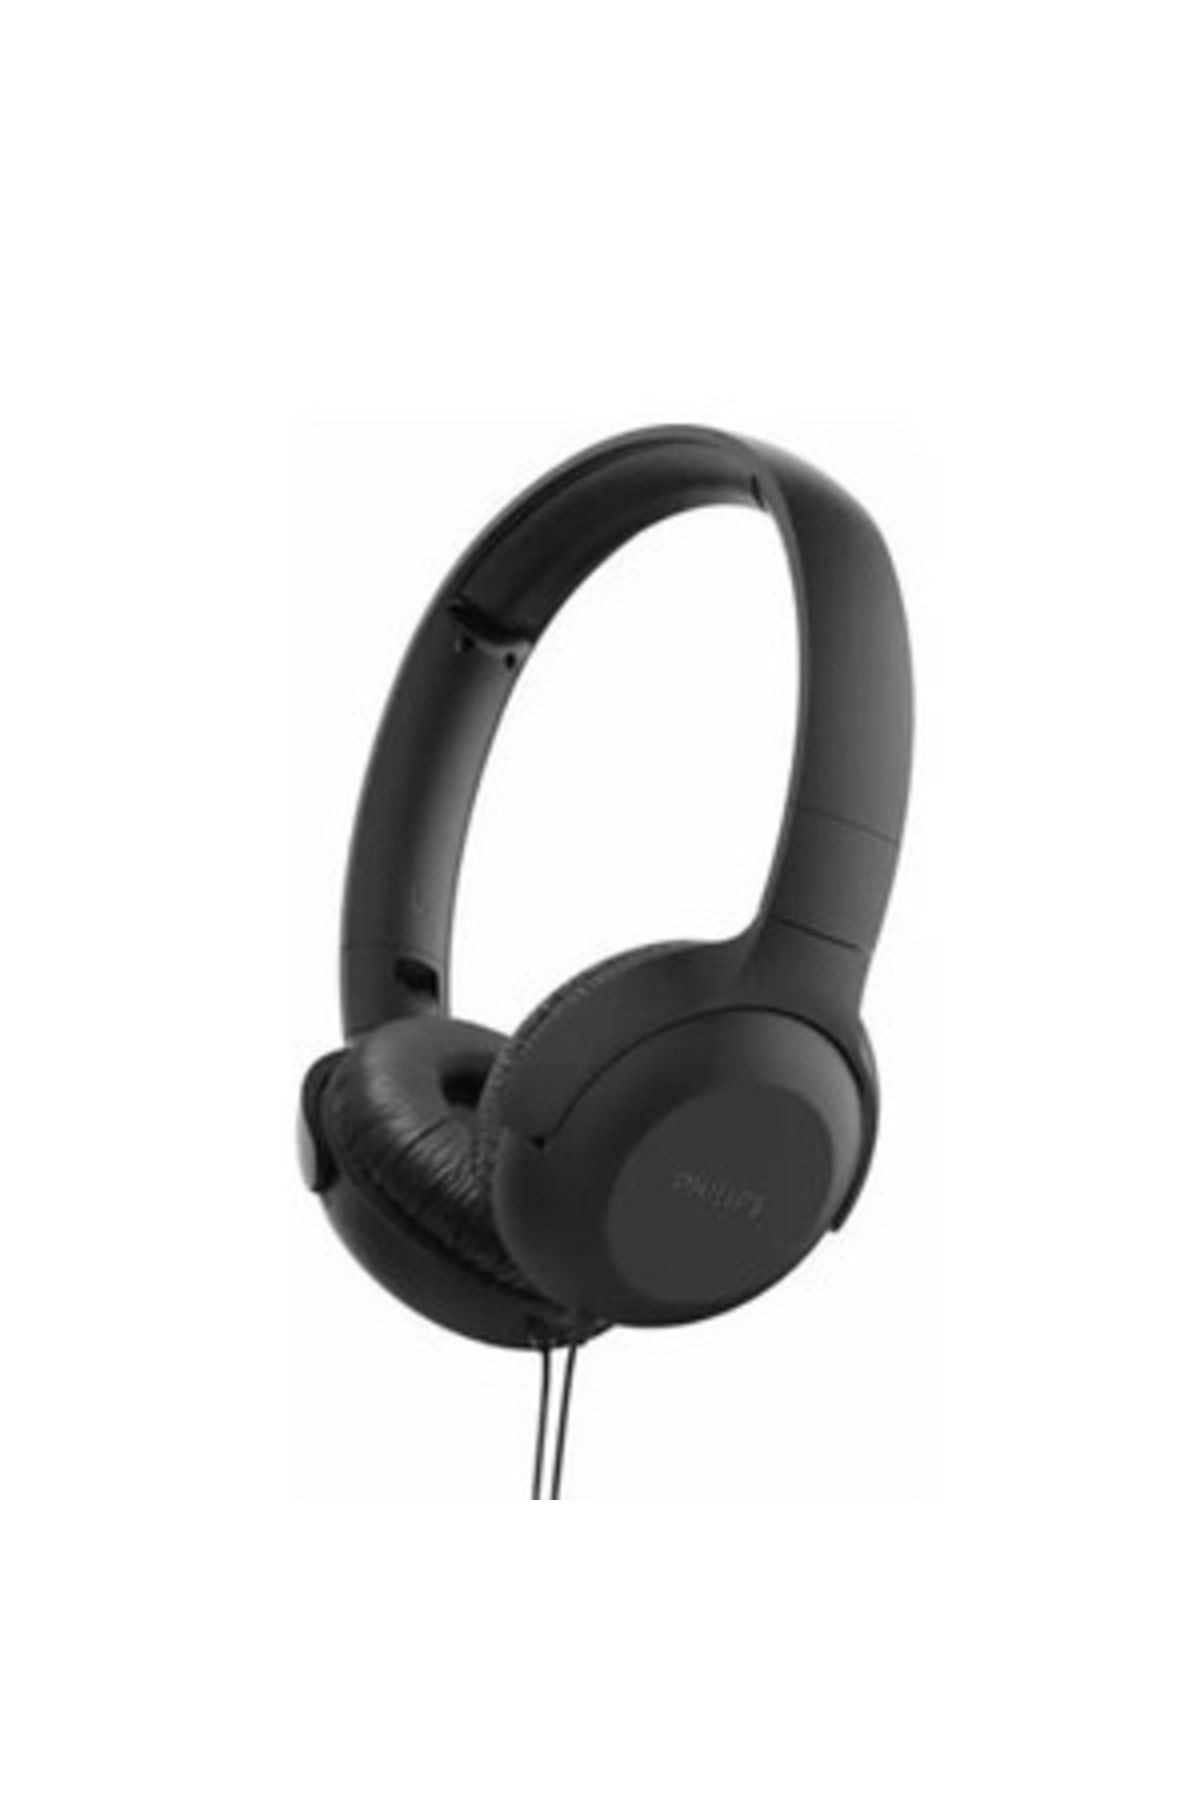 Miniso Philips Tauh201bk/00 Mikrofonlu Kafa Bantlı Kablolu Kulak Üstü Kulaklık Siyah